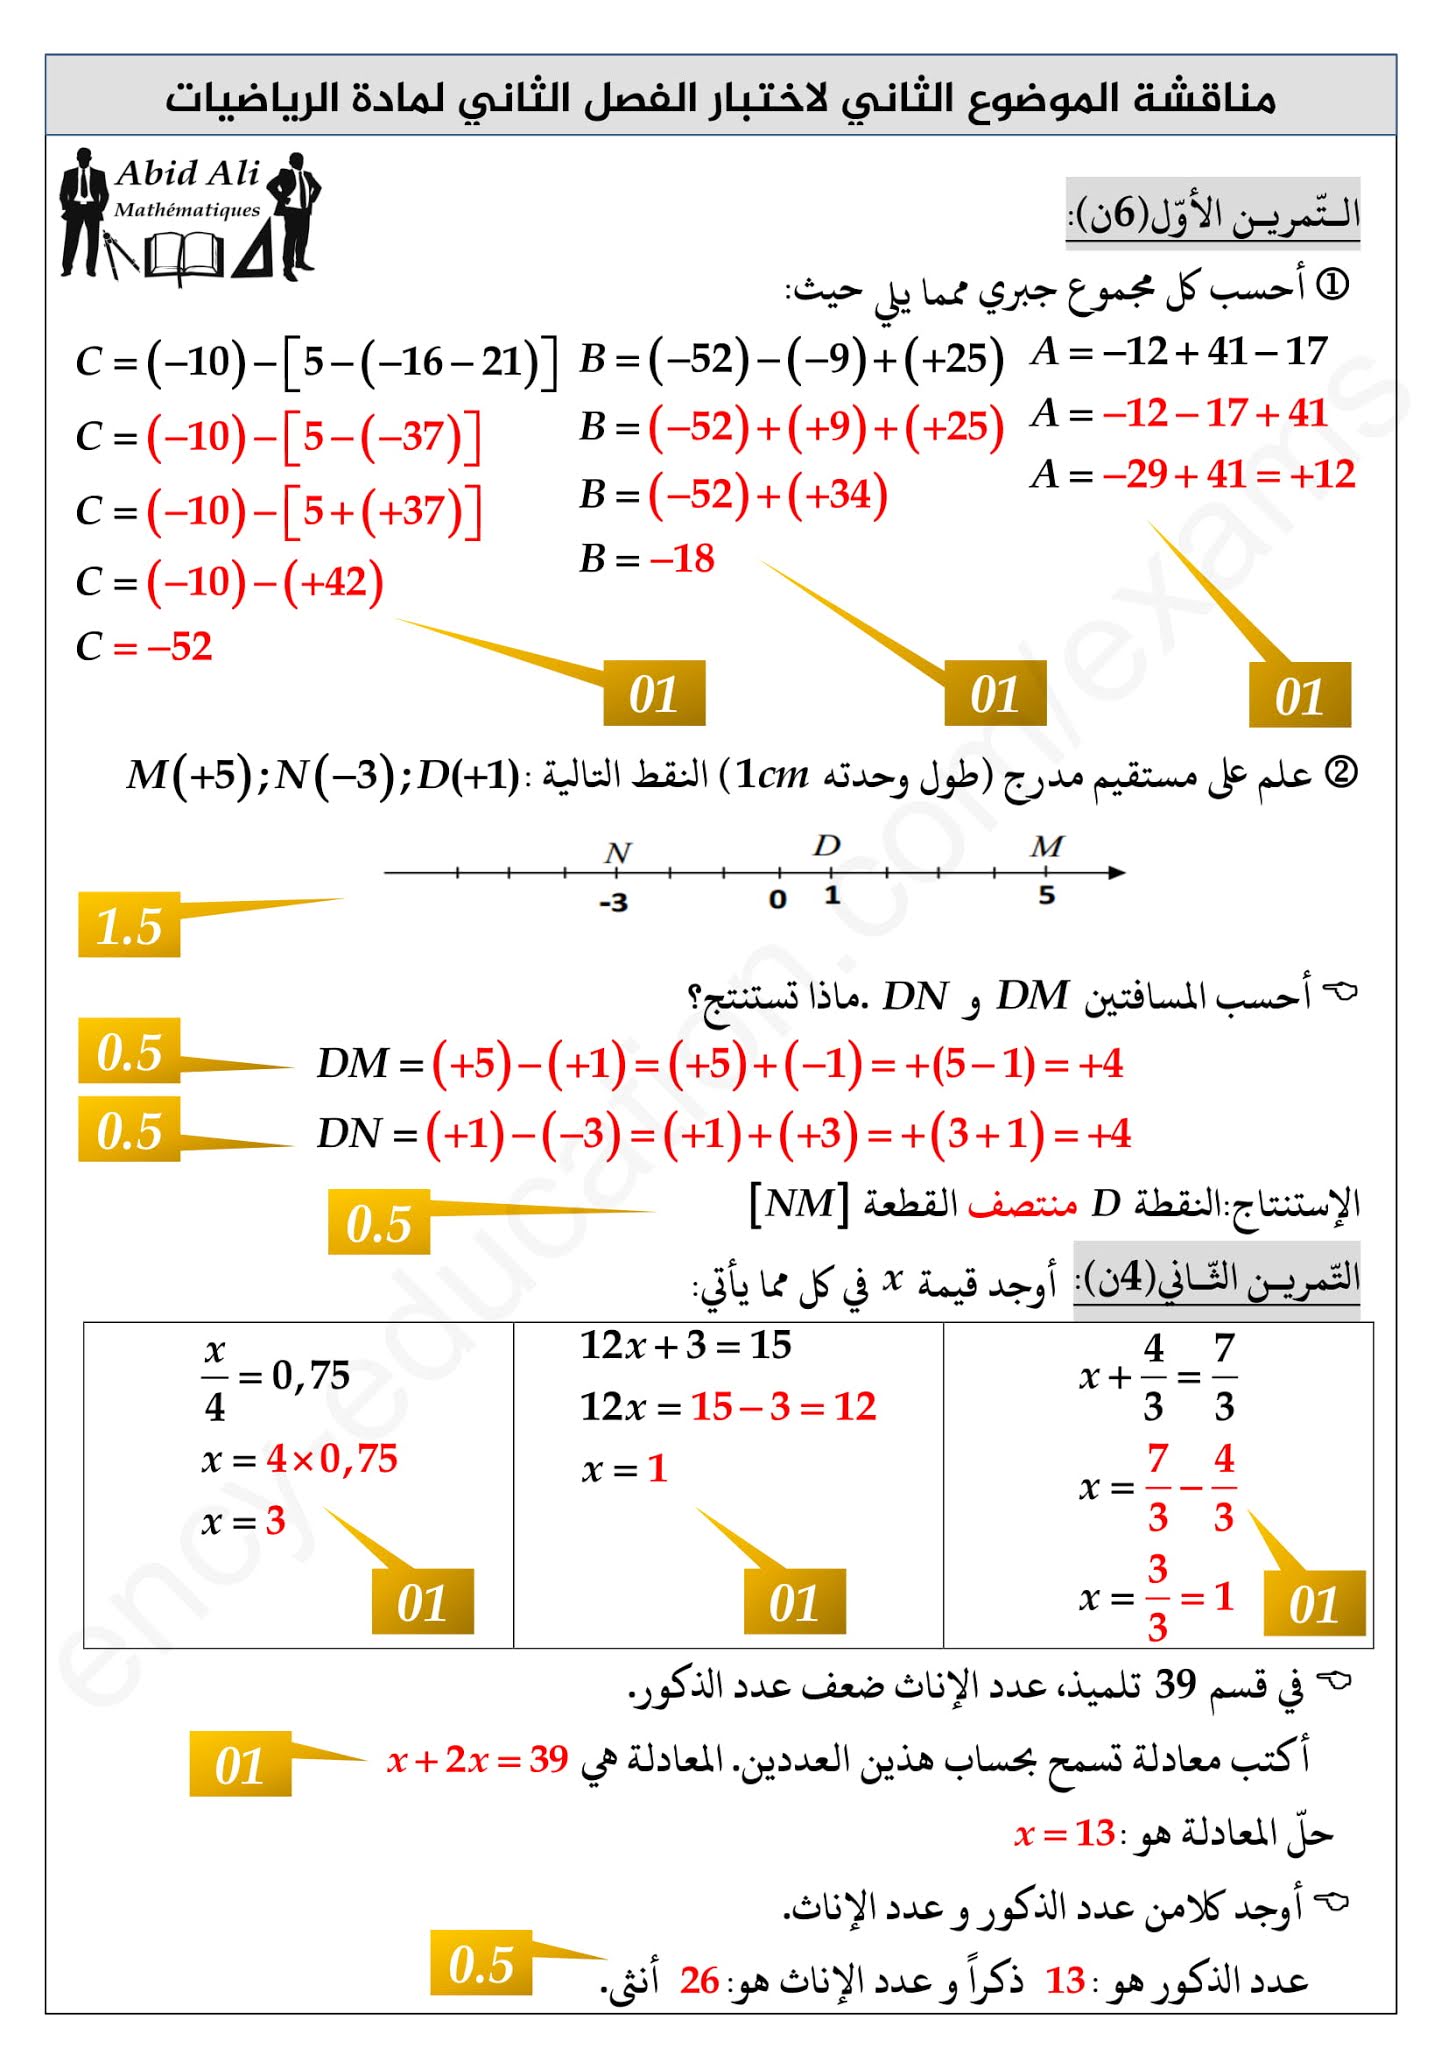 إختبار الرياضيات الفصل الثاني للسنة الثانية متوسط - الجيل الثاني نموذج 2